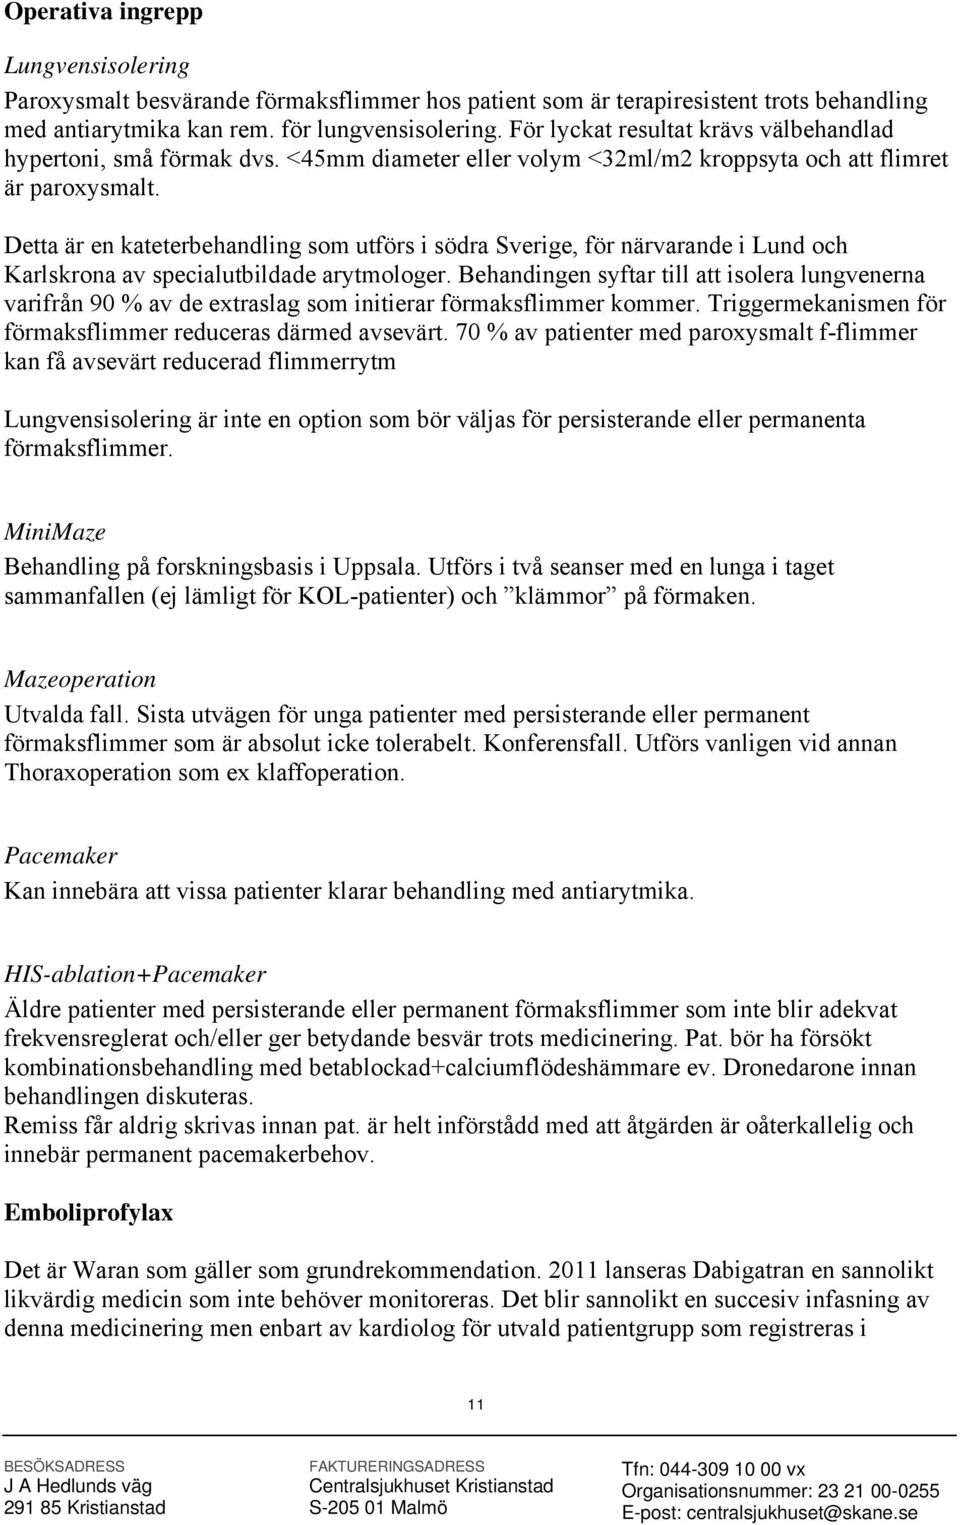 Detta är en kateterbehandling som utförs i södra Sverige, för närvarande i Lund och Karlskrona av specialutbildade arytmologer.